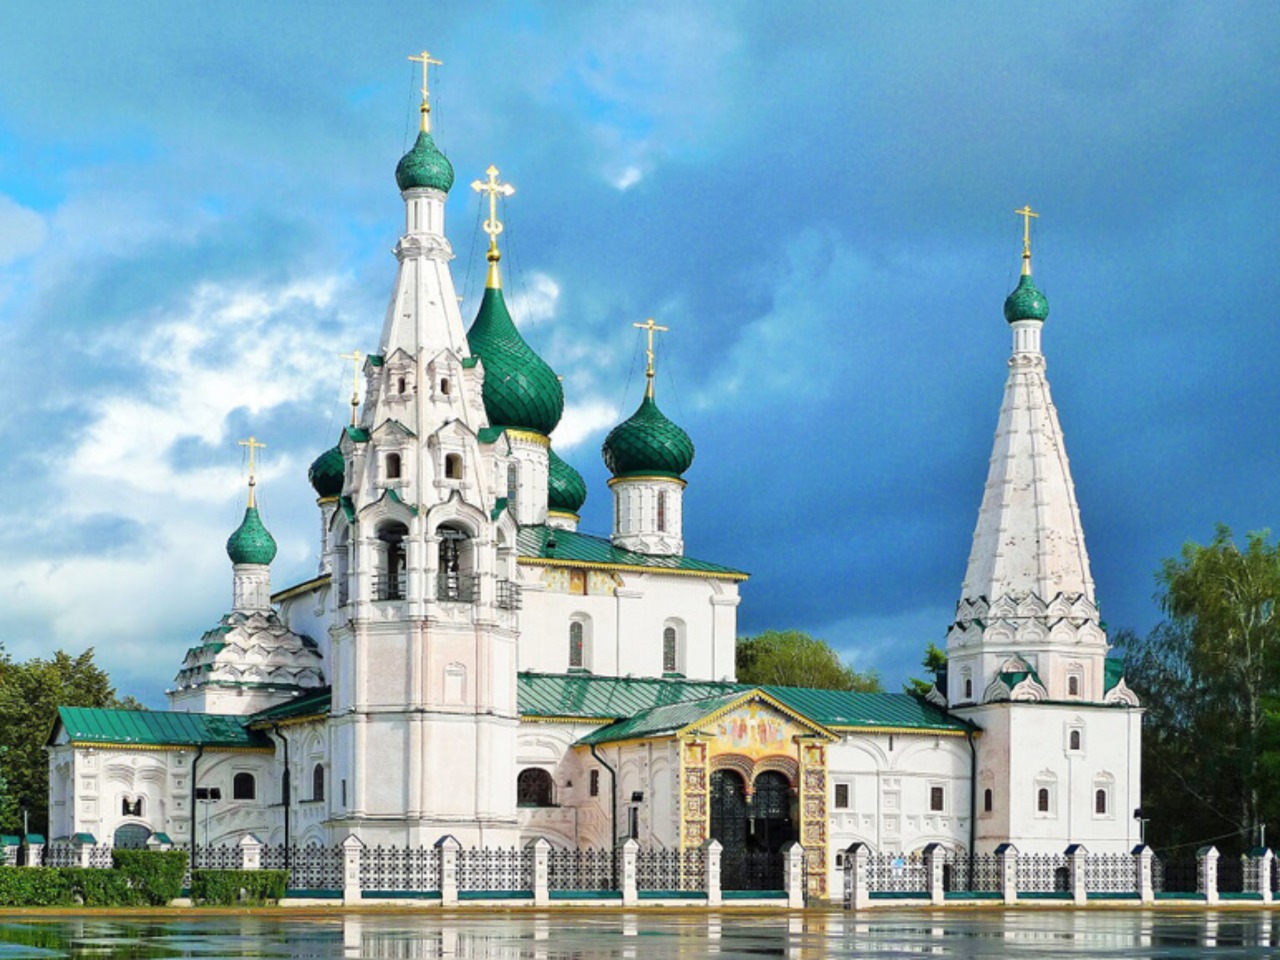 Экскурсия по историческому центру Ярославля | Цена 3500₽, отзывы, описание экскурсии